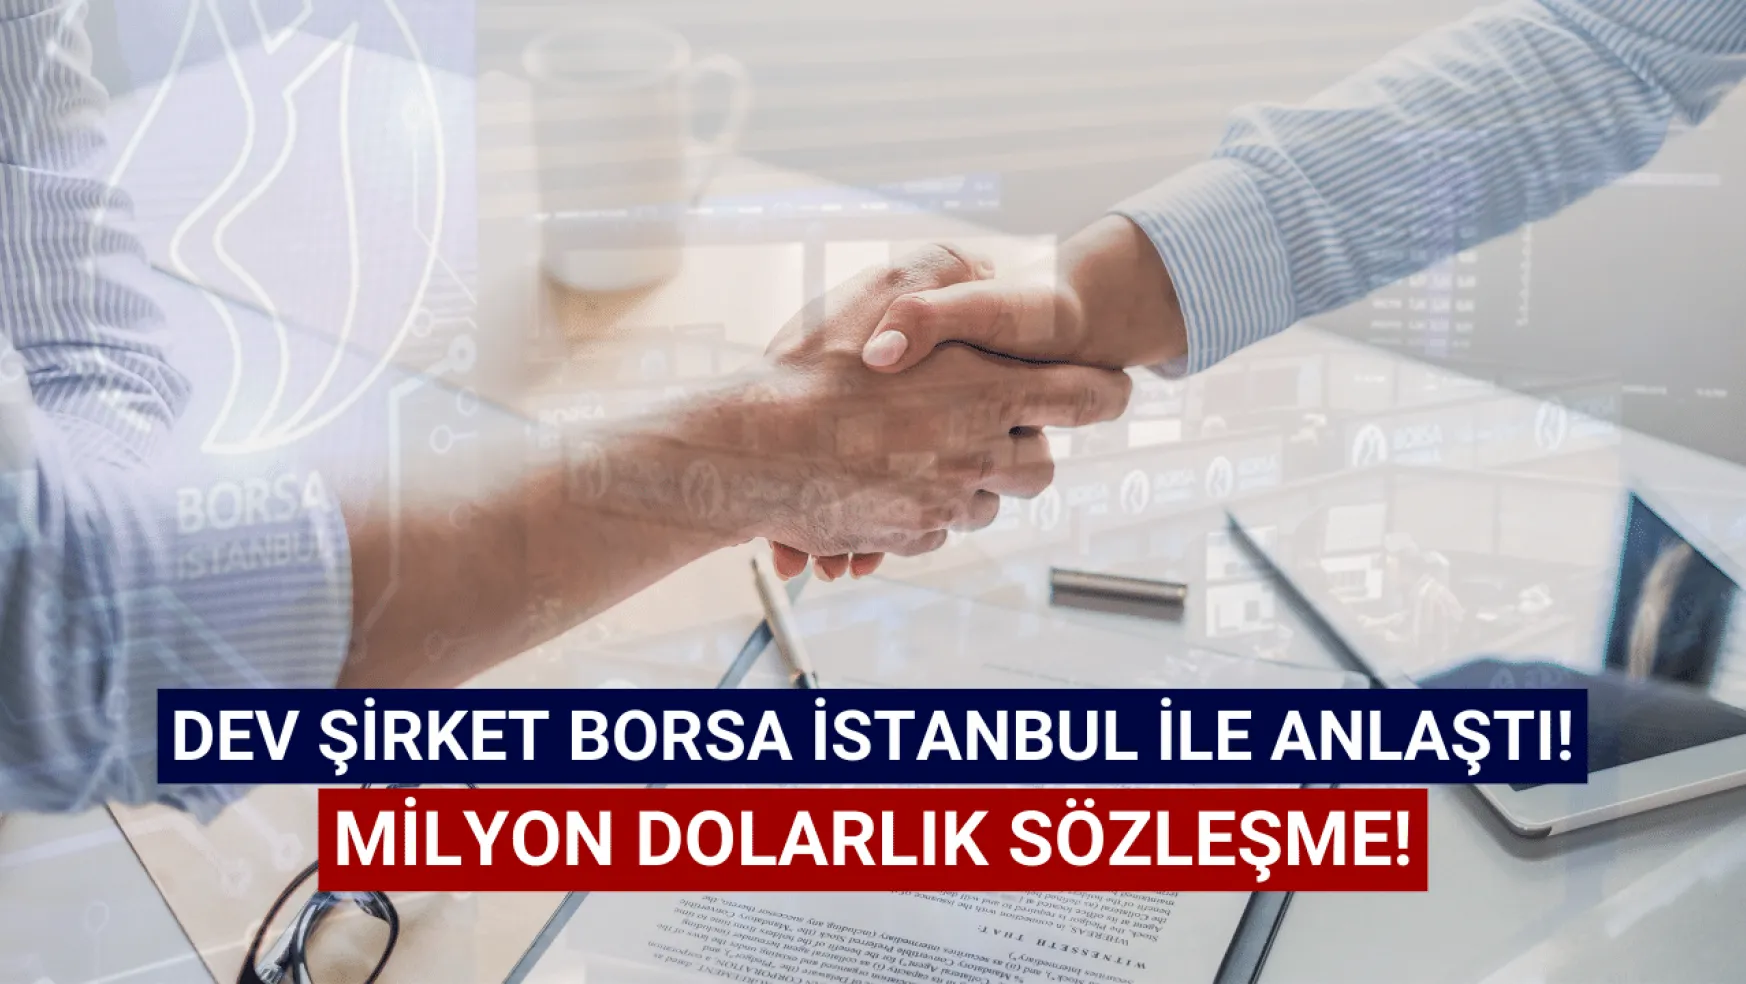 Dev şirket, Borsa İstanbul ile milyon dolarlık anlaşma yaptı!